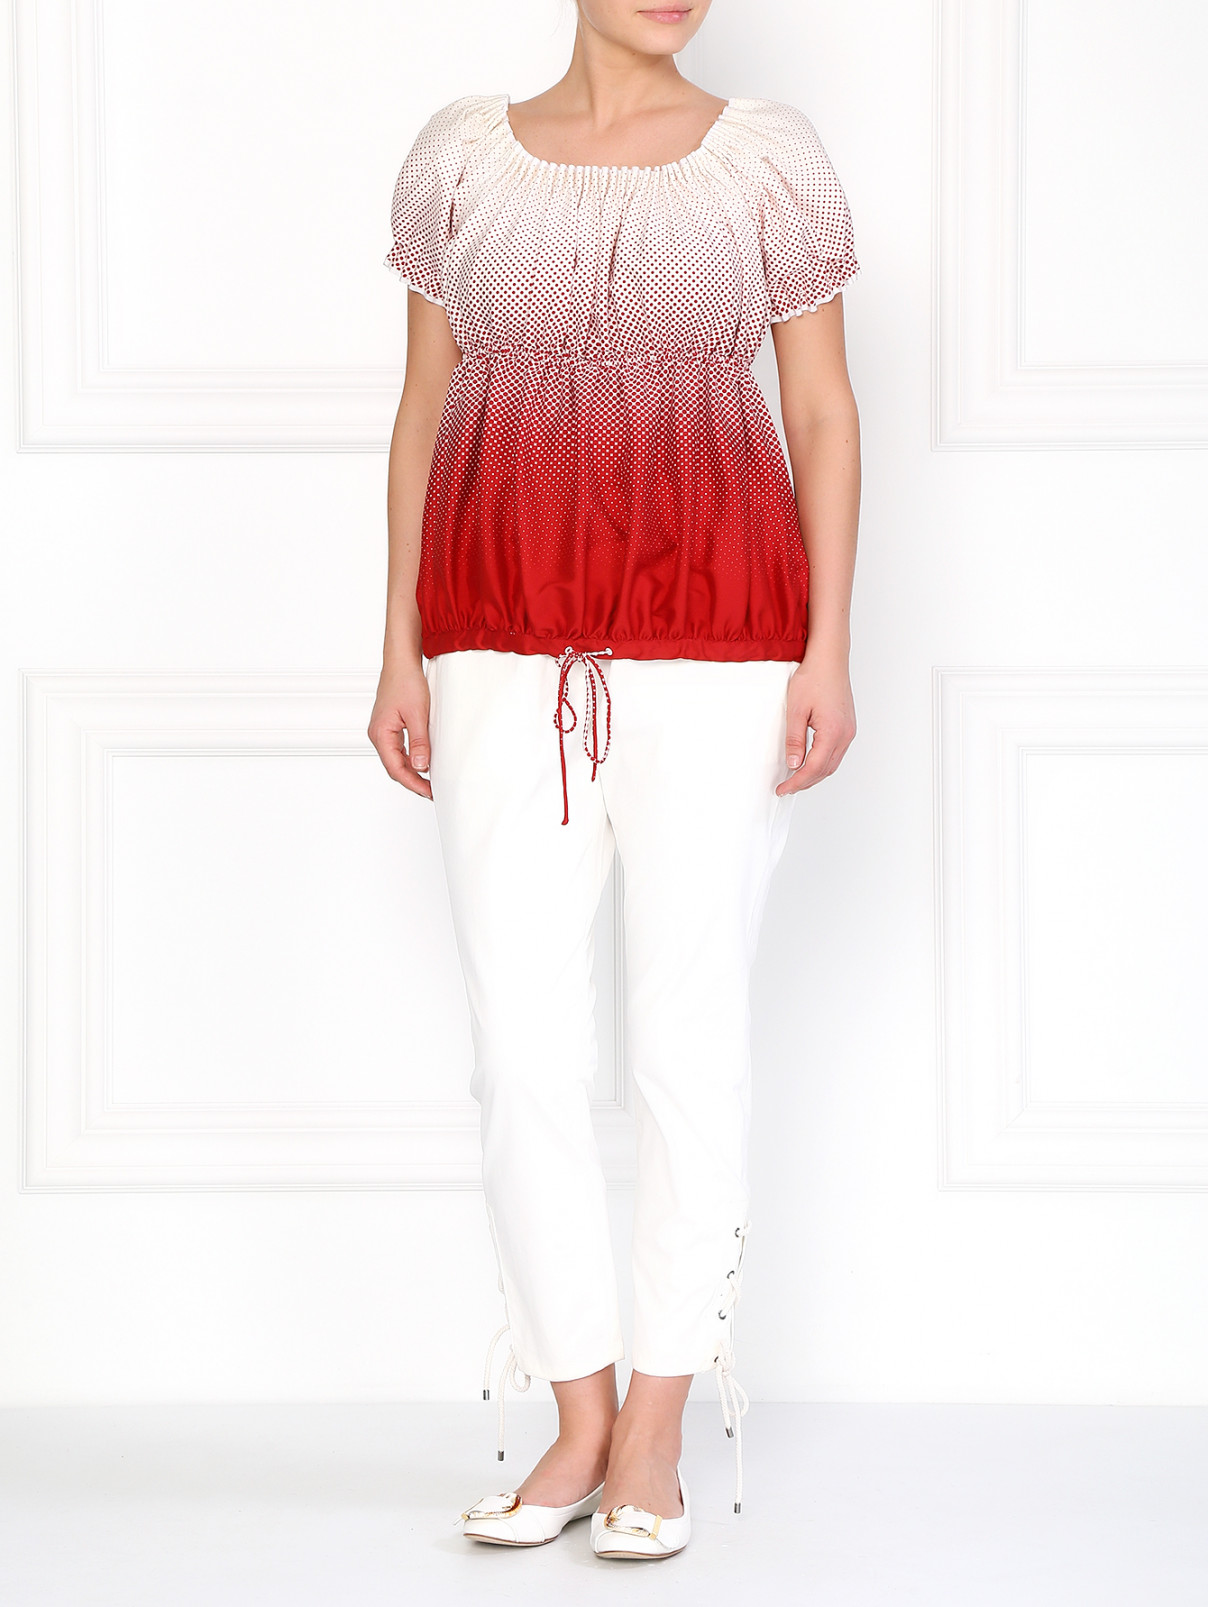 Шелковая блуза с принтом "горох" Jean Paul Gaultier  –  Модель Общий вид  – Цвет:  Узор